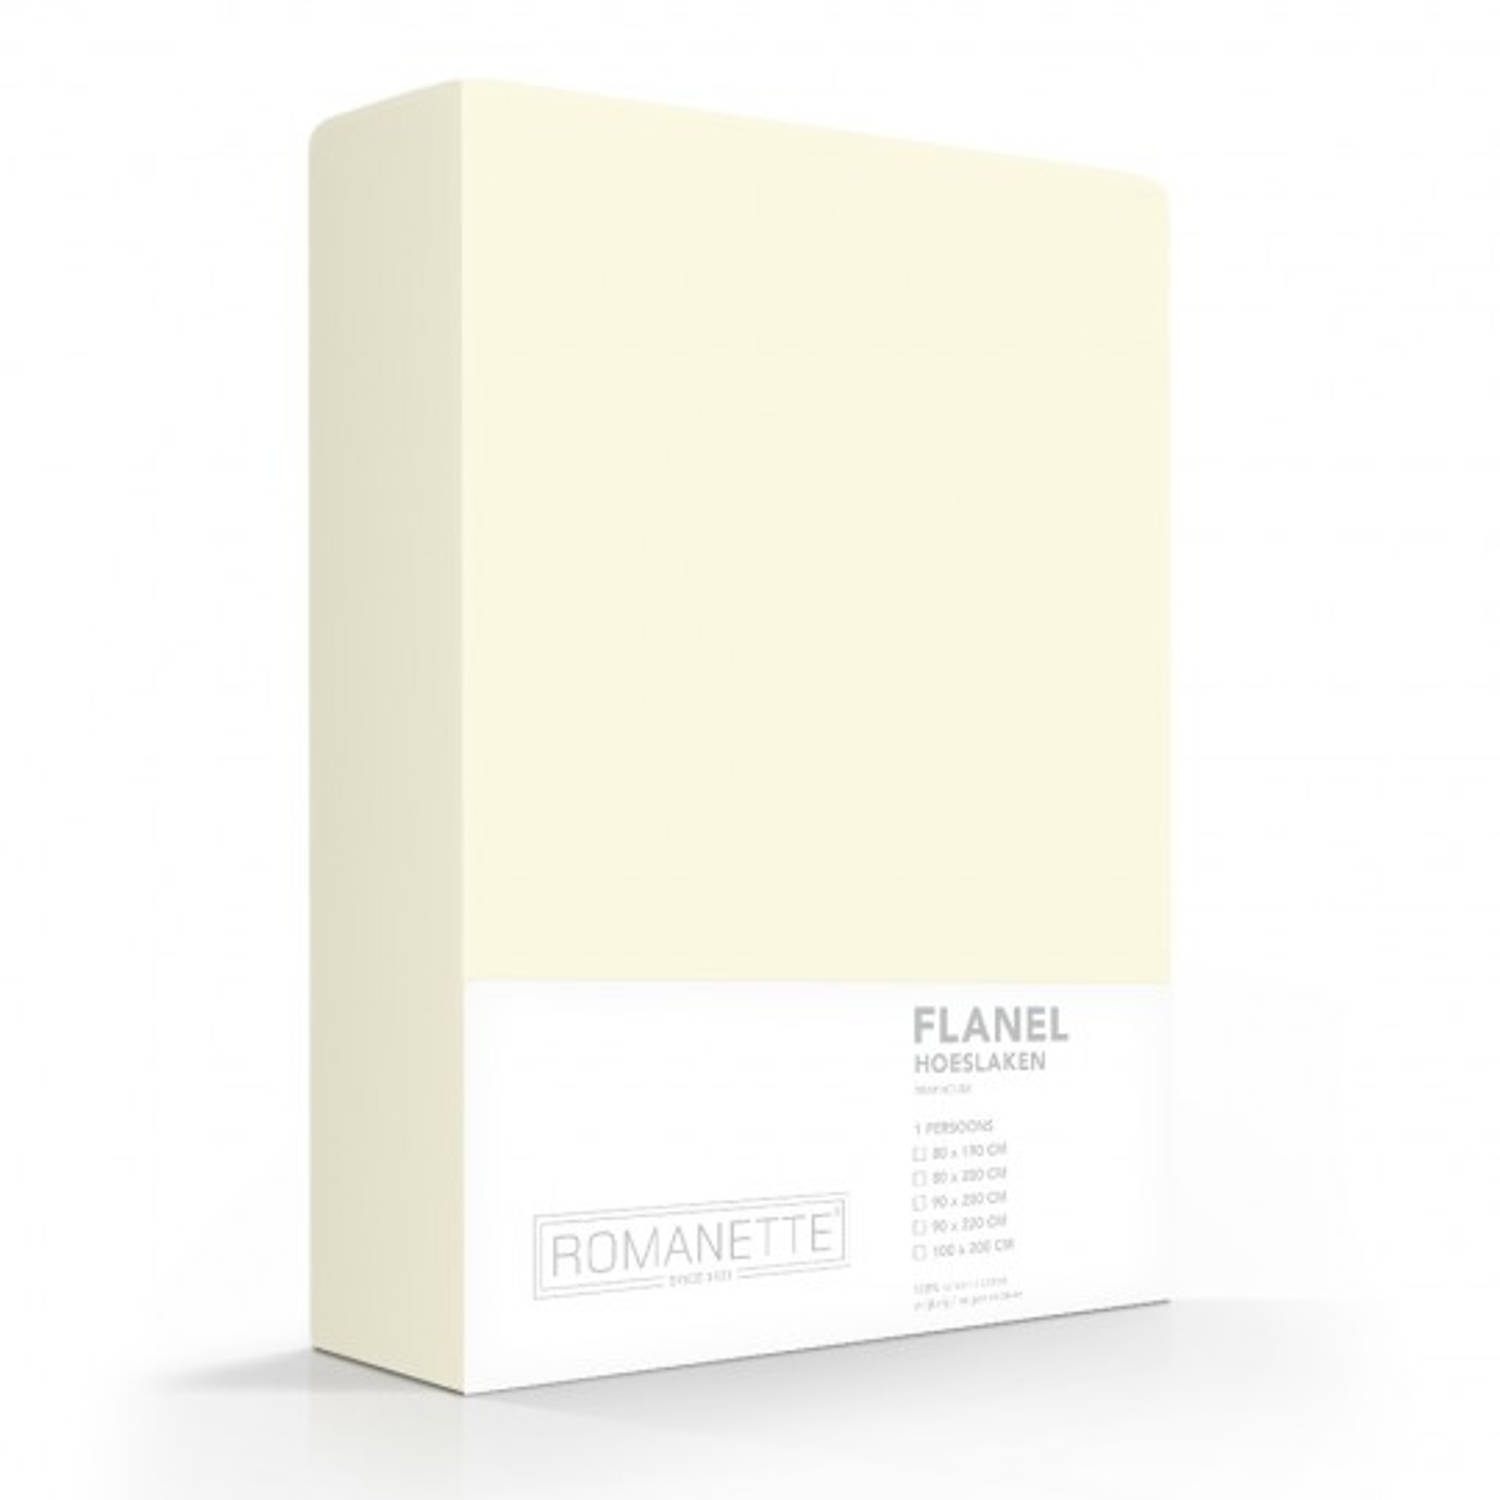 Flanellen Hoeslaken Ivoor Romanette-200 X 220 Cm